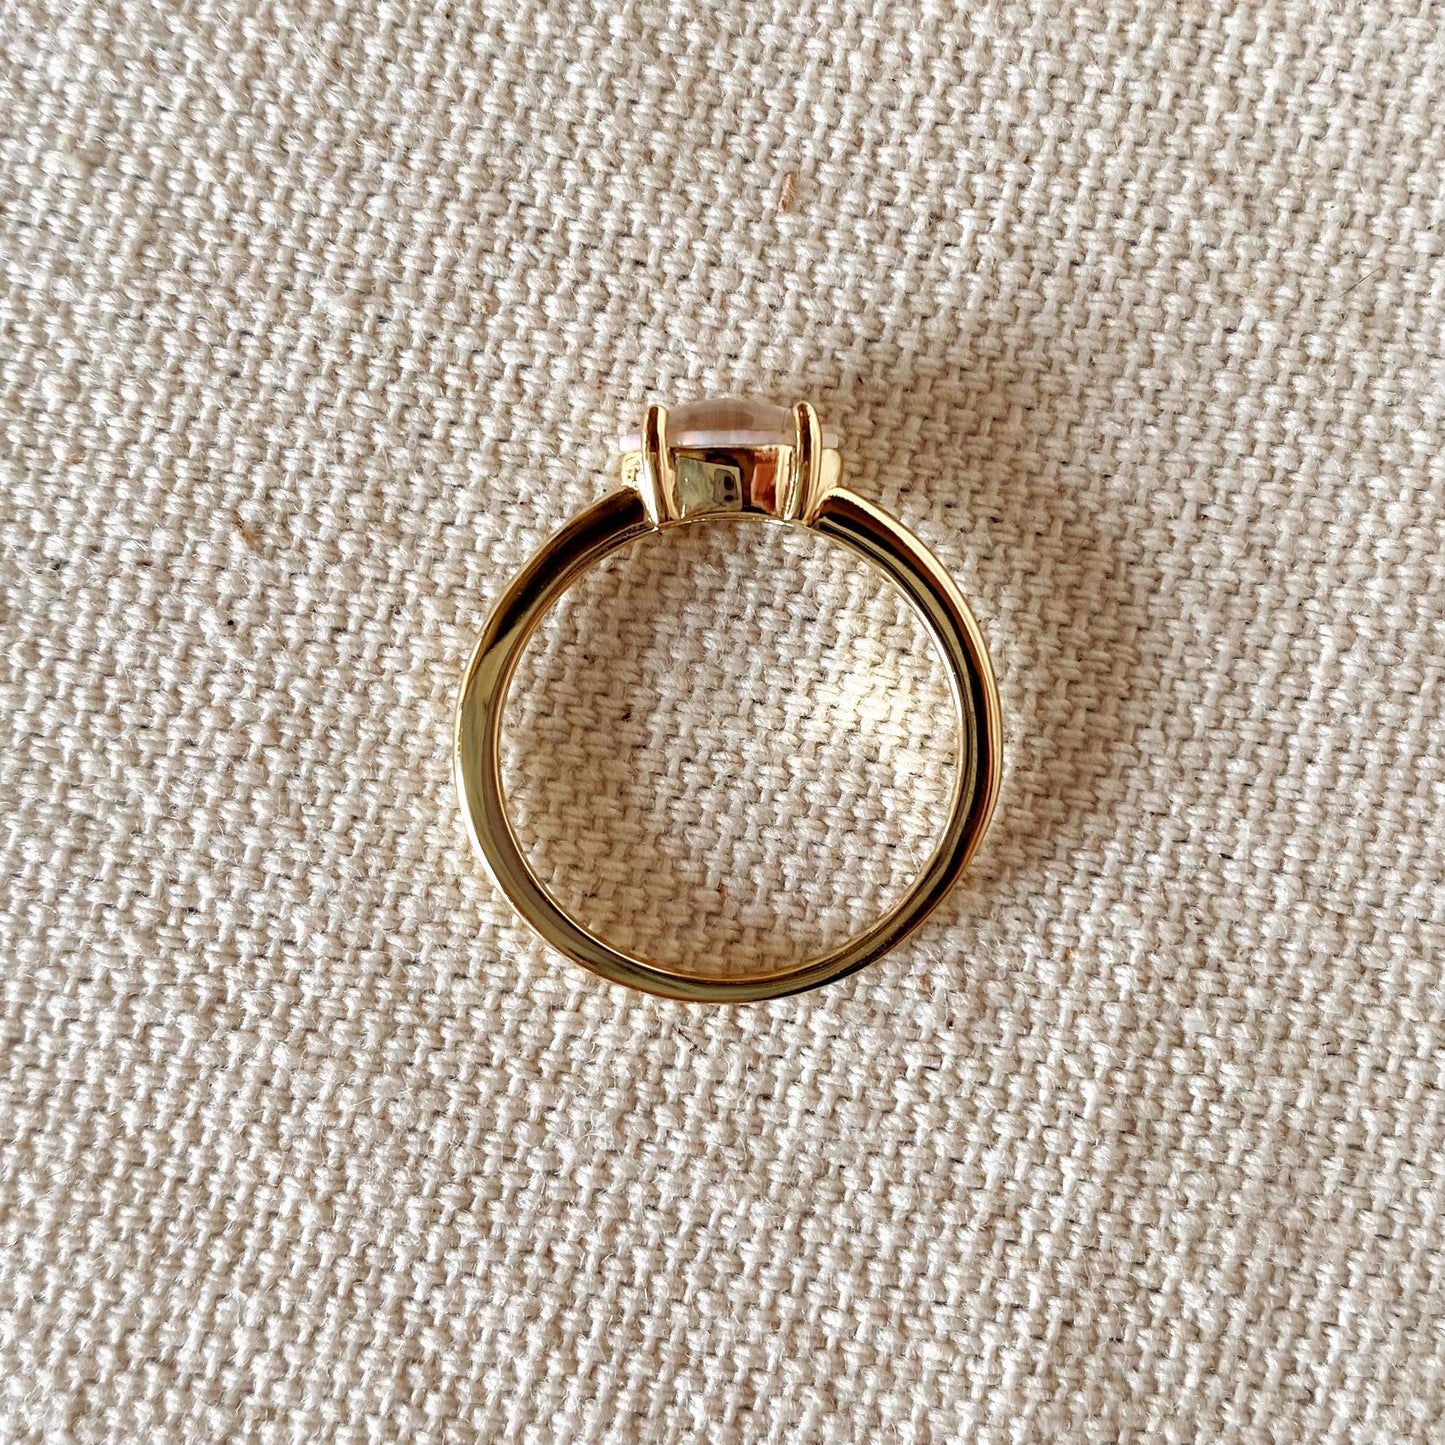 GoldFi 18k Gold Vermeil Opal Ring